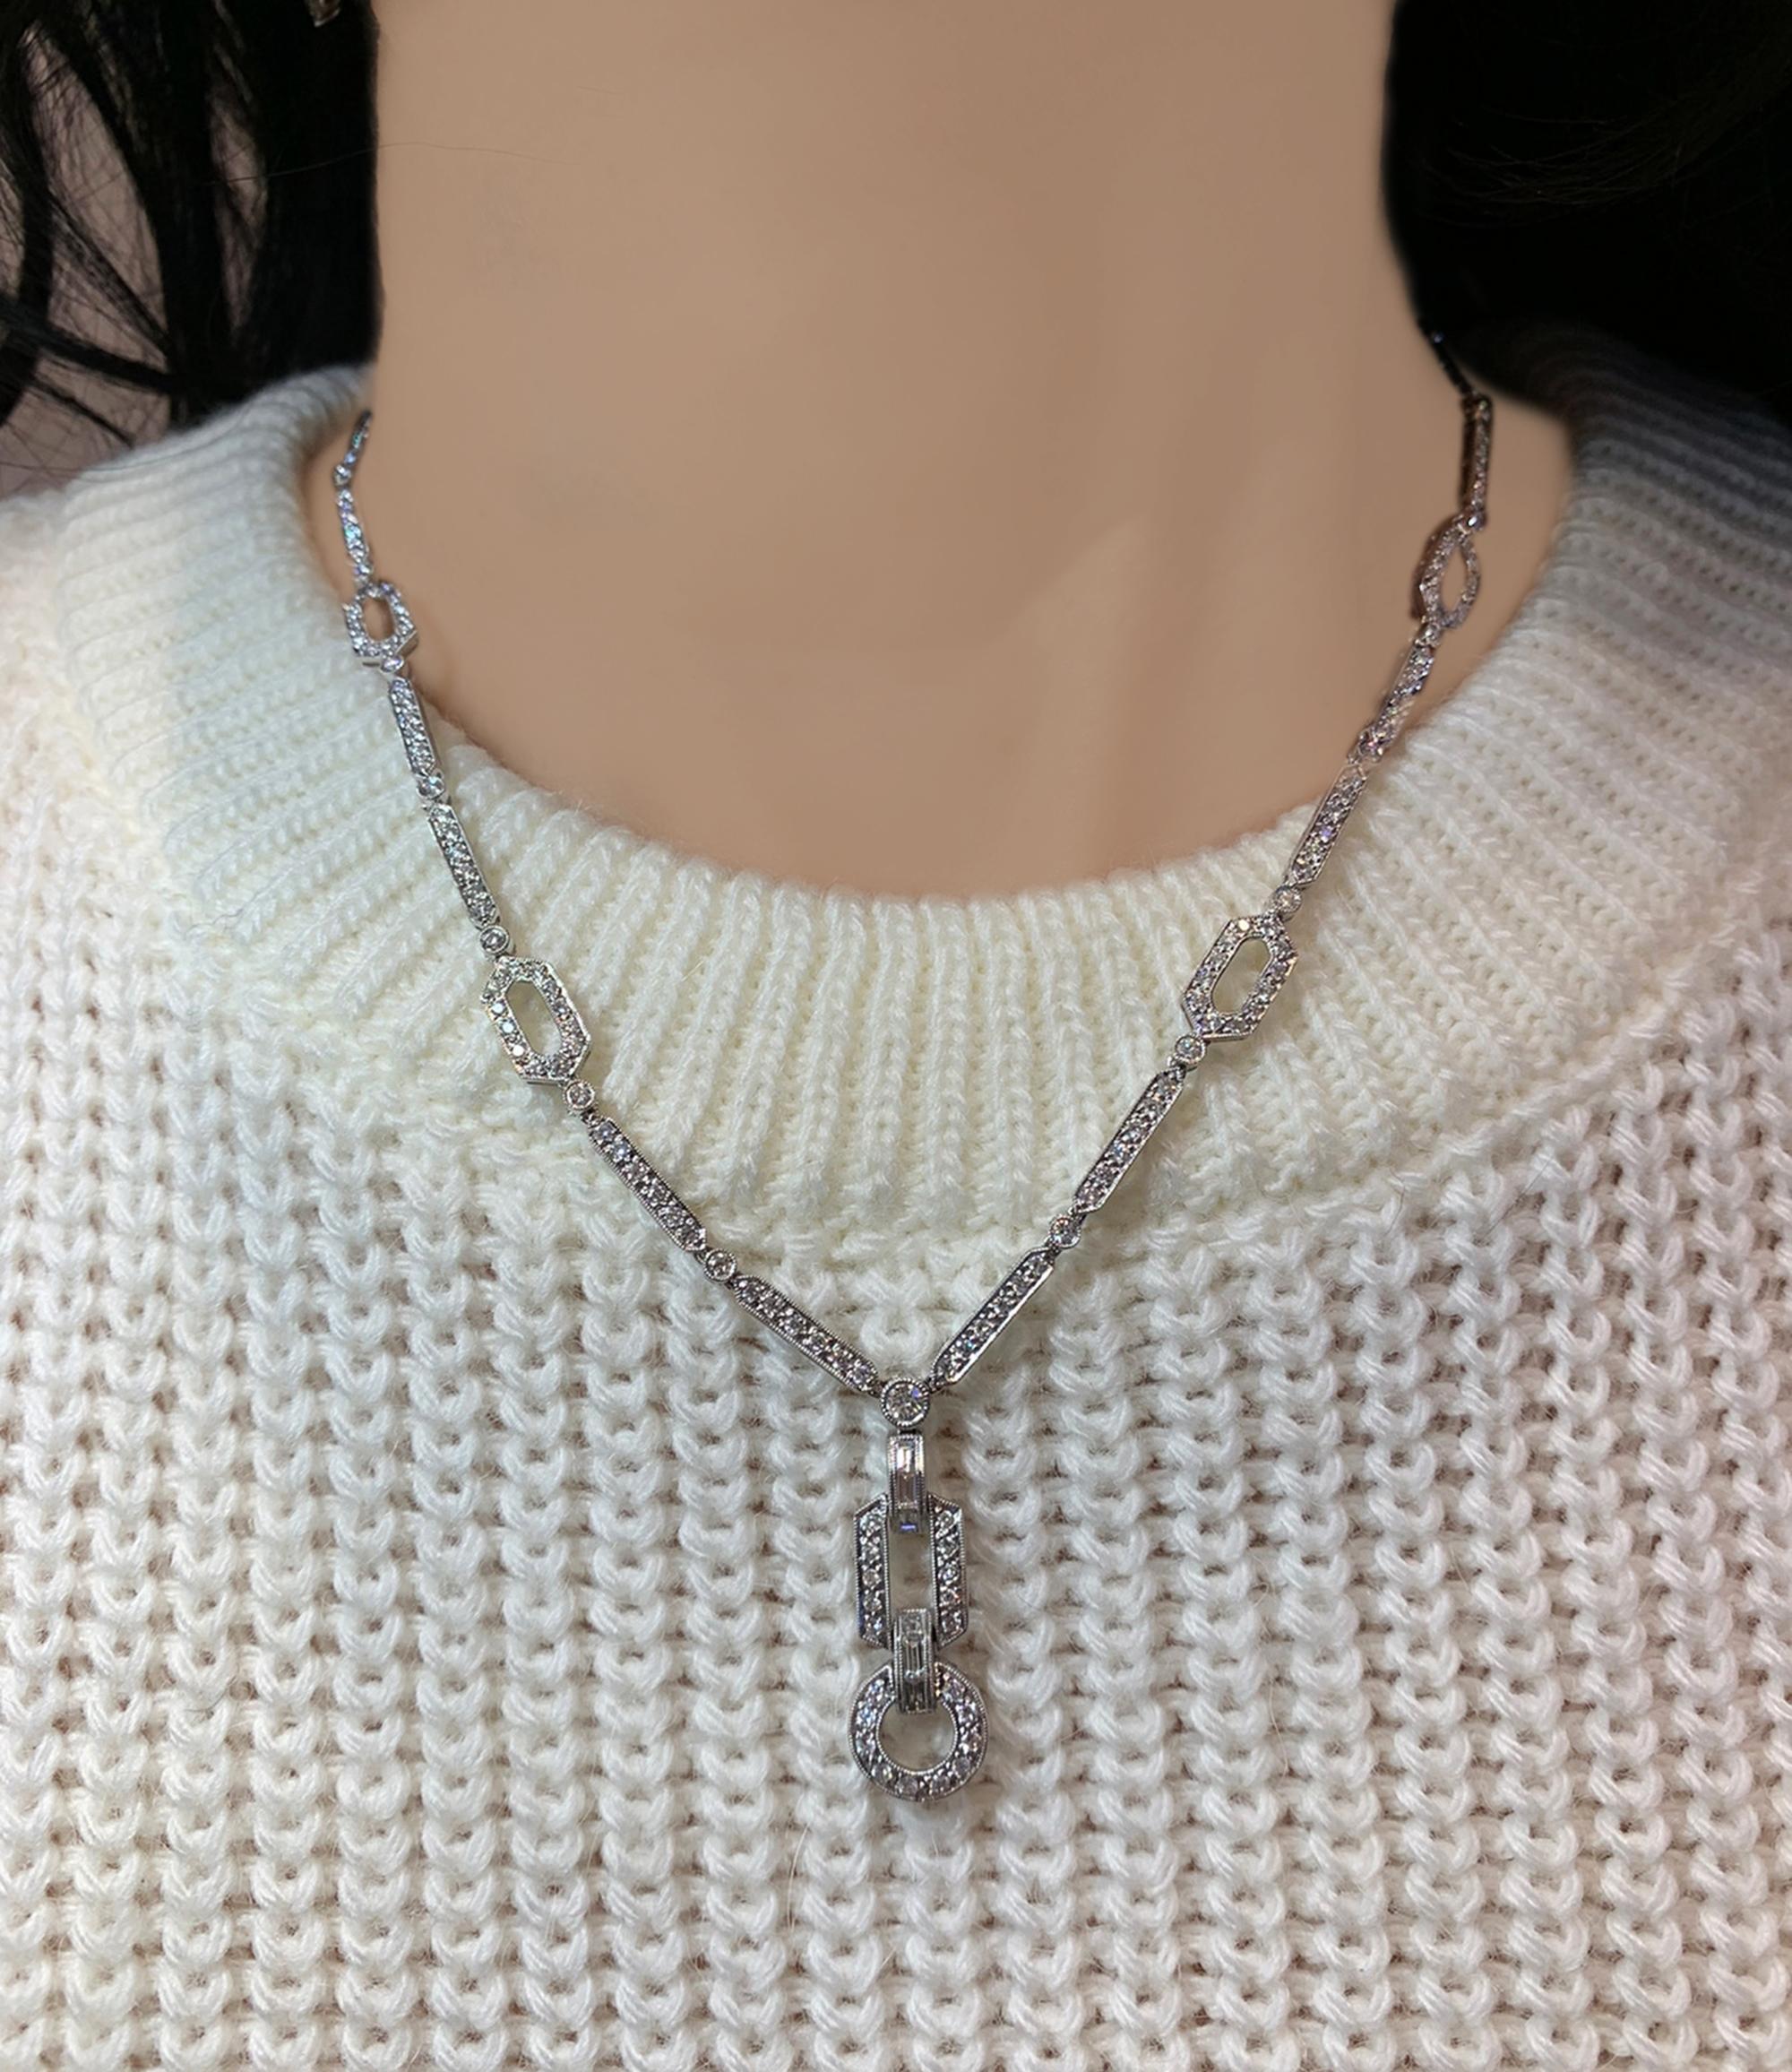 Diese zeitgenössische, mit Diamanten besetzte, gegliederte Lavalier-Halskette ist eine einzigartige Kombination von Elementen aus der Schmuckgeschichte, die dennoch wie ein exquisites modernes Stück funkelt und zusammenhält. Das Collier aus 18 Karat